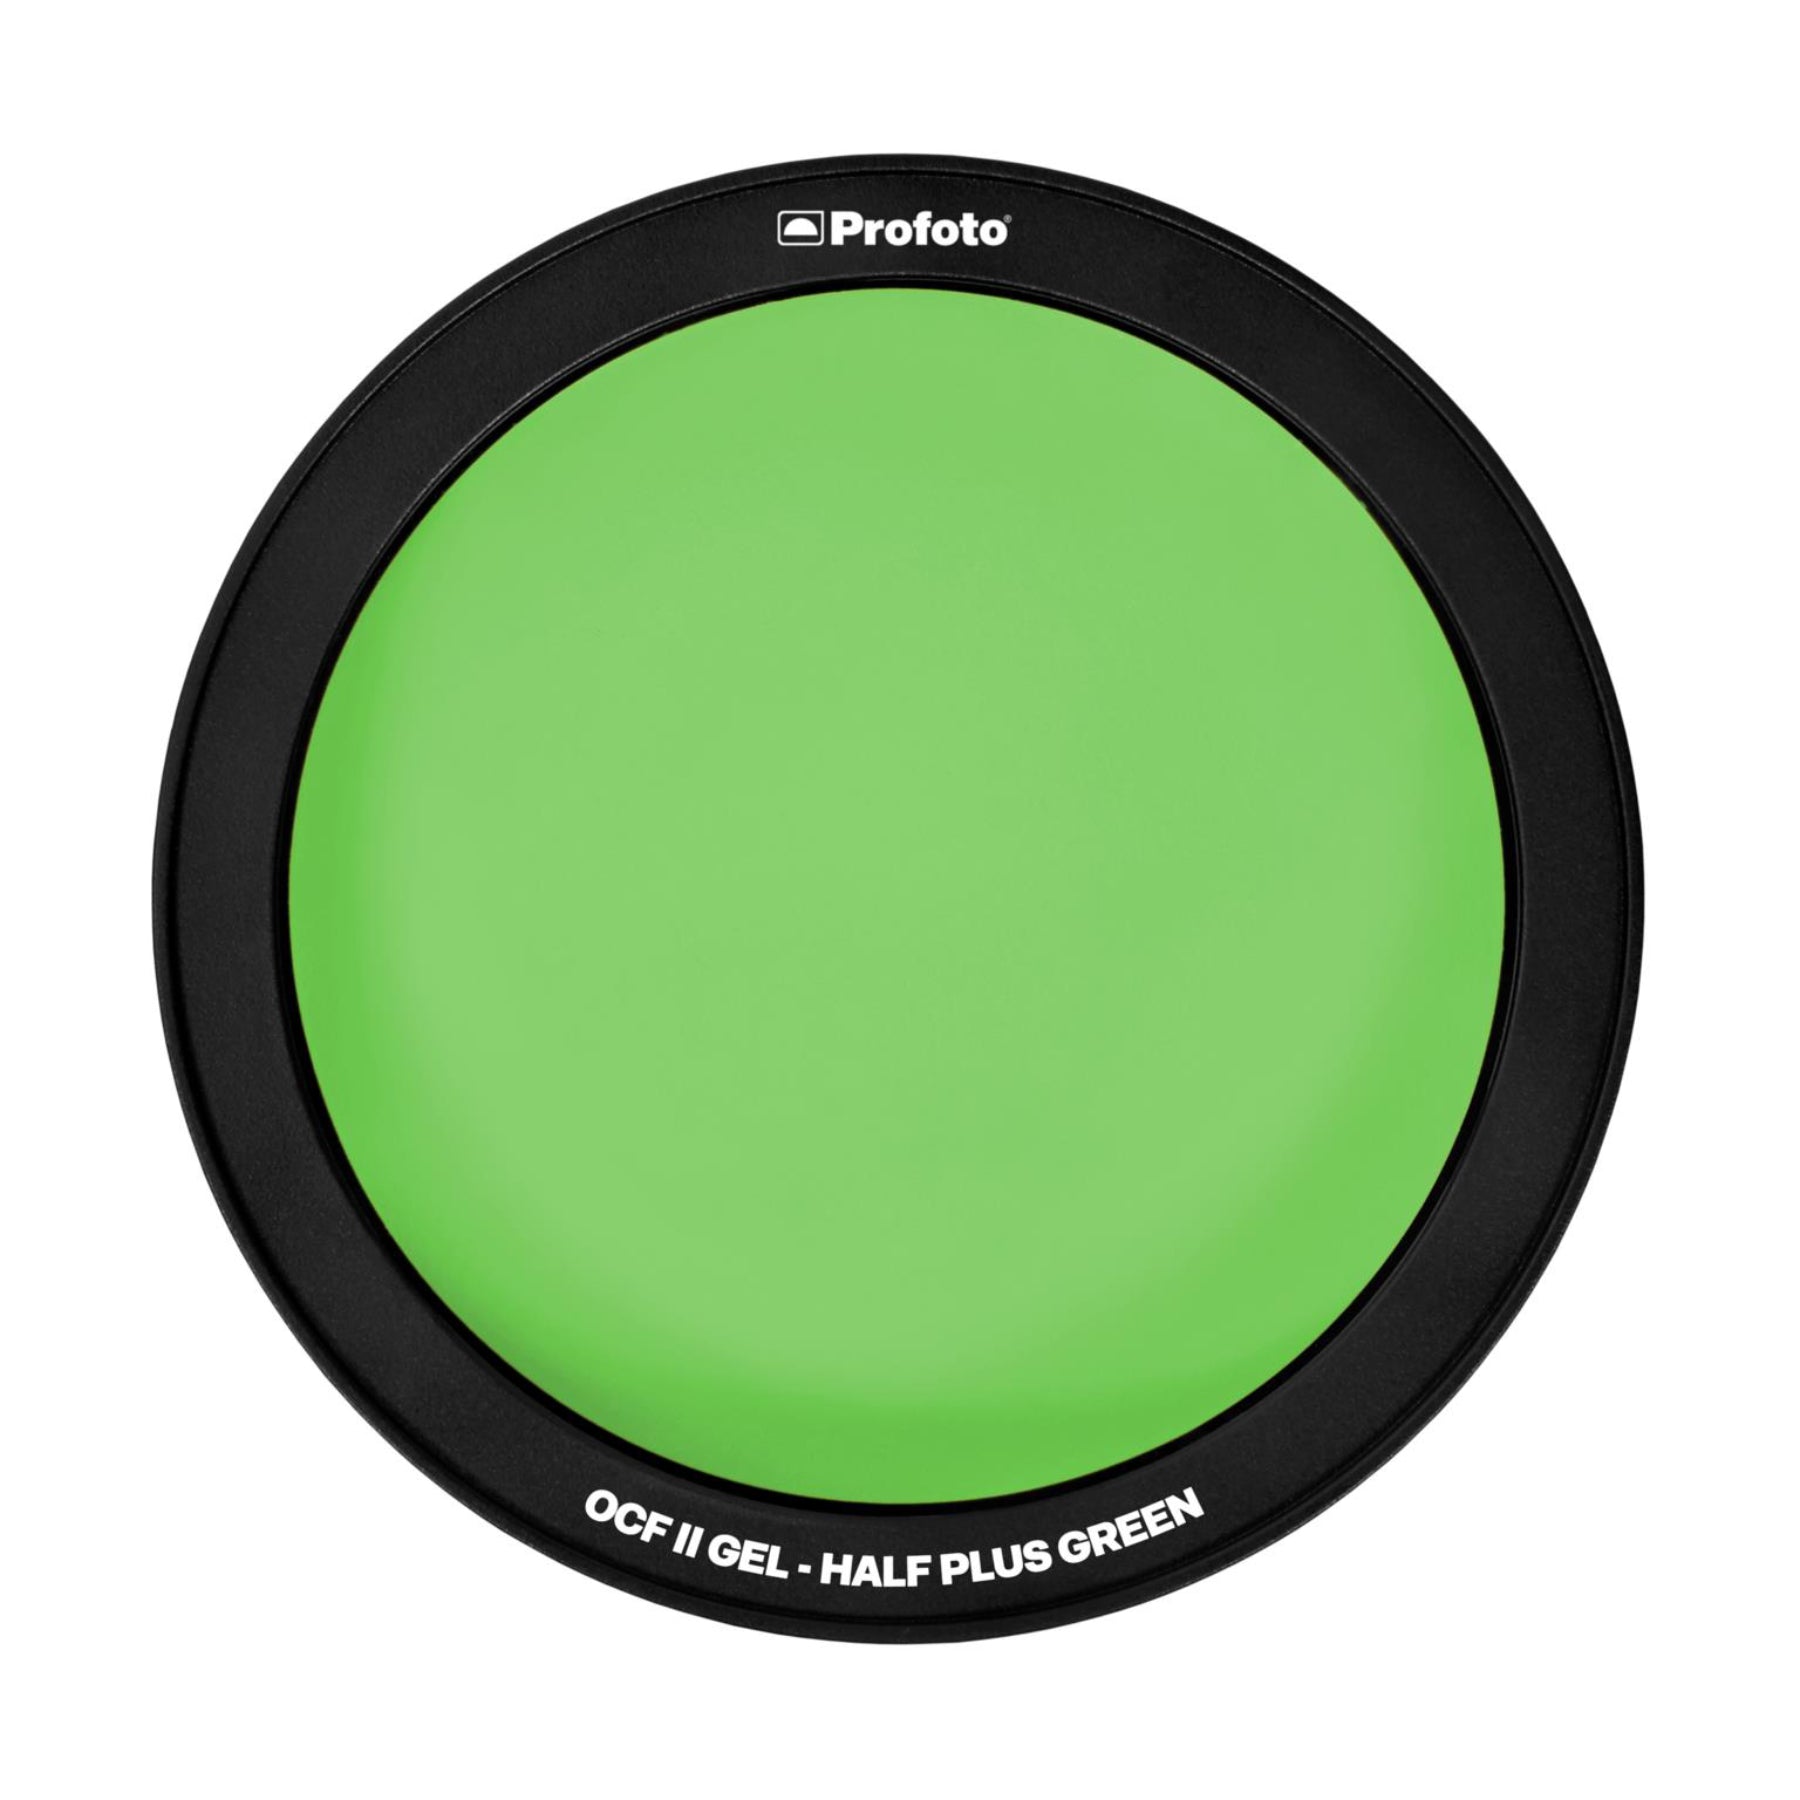 Buy Profoto OCF II Gel Half plus Green | Topic Store